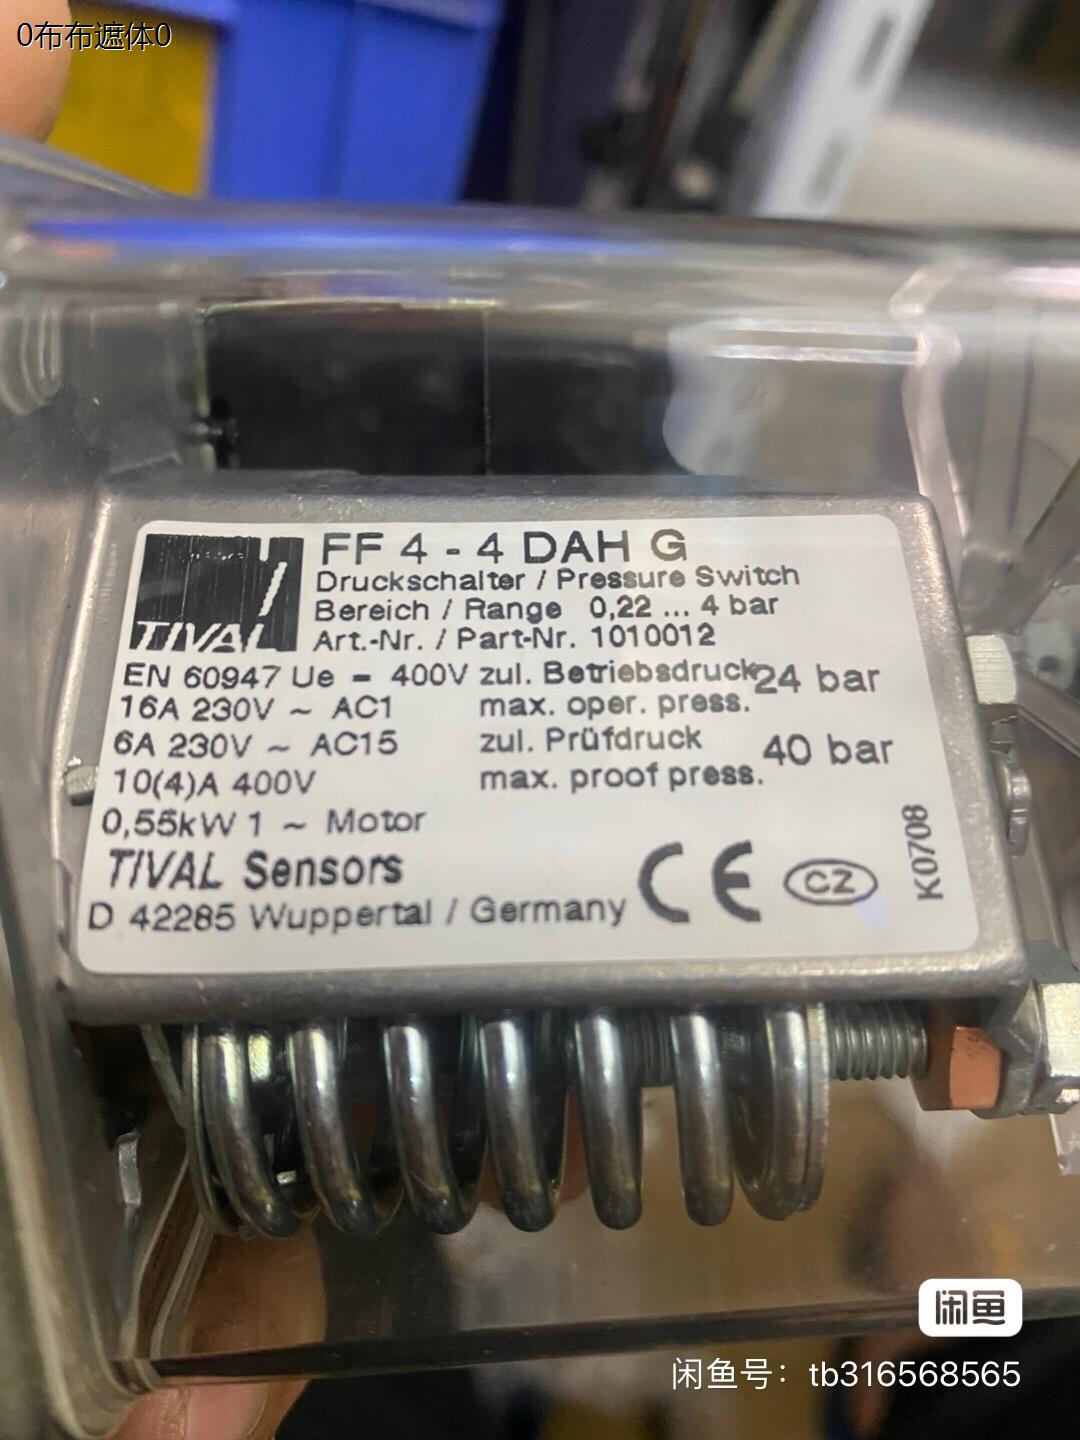 进口Tival 压力控制器 FF4-4DAH G，有一个询价为准